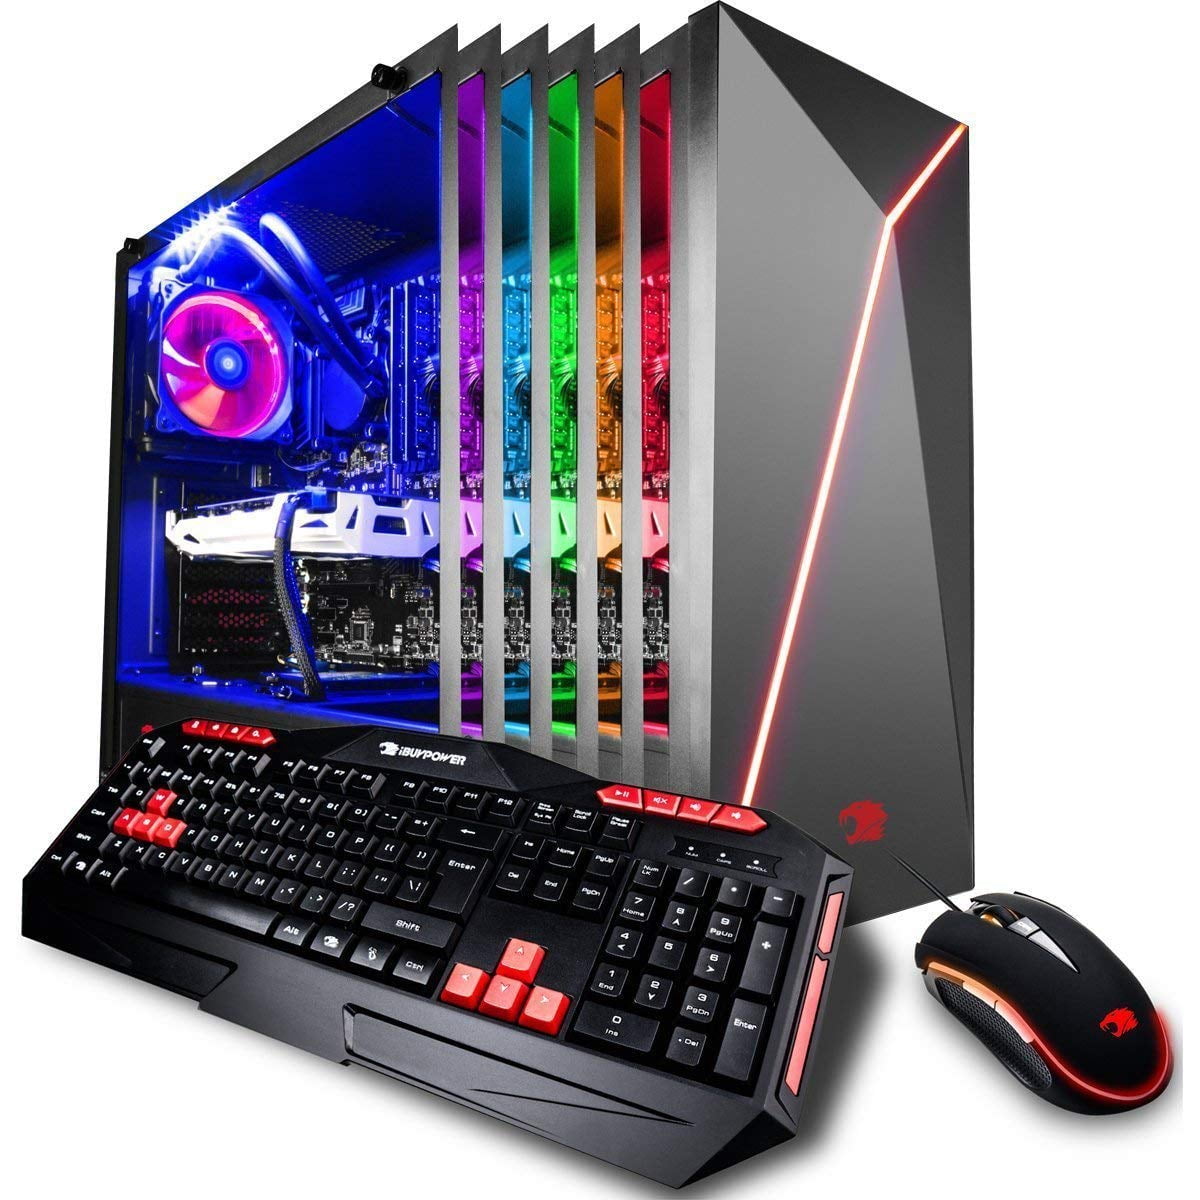 iBUYPOWER Gaming PC Desktop i7-8700K 6-Core 3.7 GHz, GTX 1070 Ti 8GB, Z370  Motherboard, 16GB RAM, 1TB HDD, 240GB SSD, Liquid Cooled, 802.11AC WiFi, 